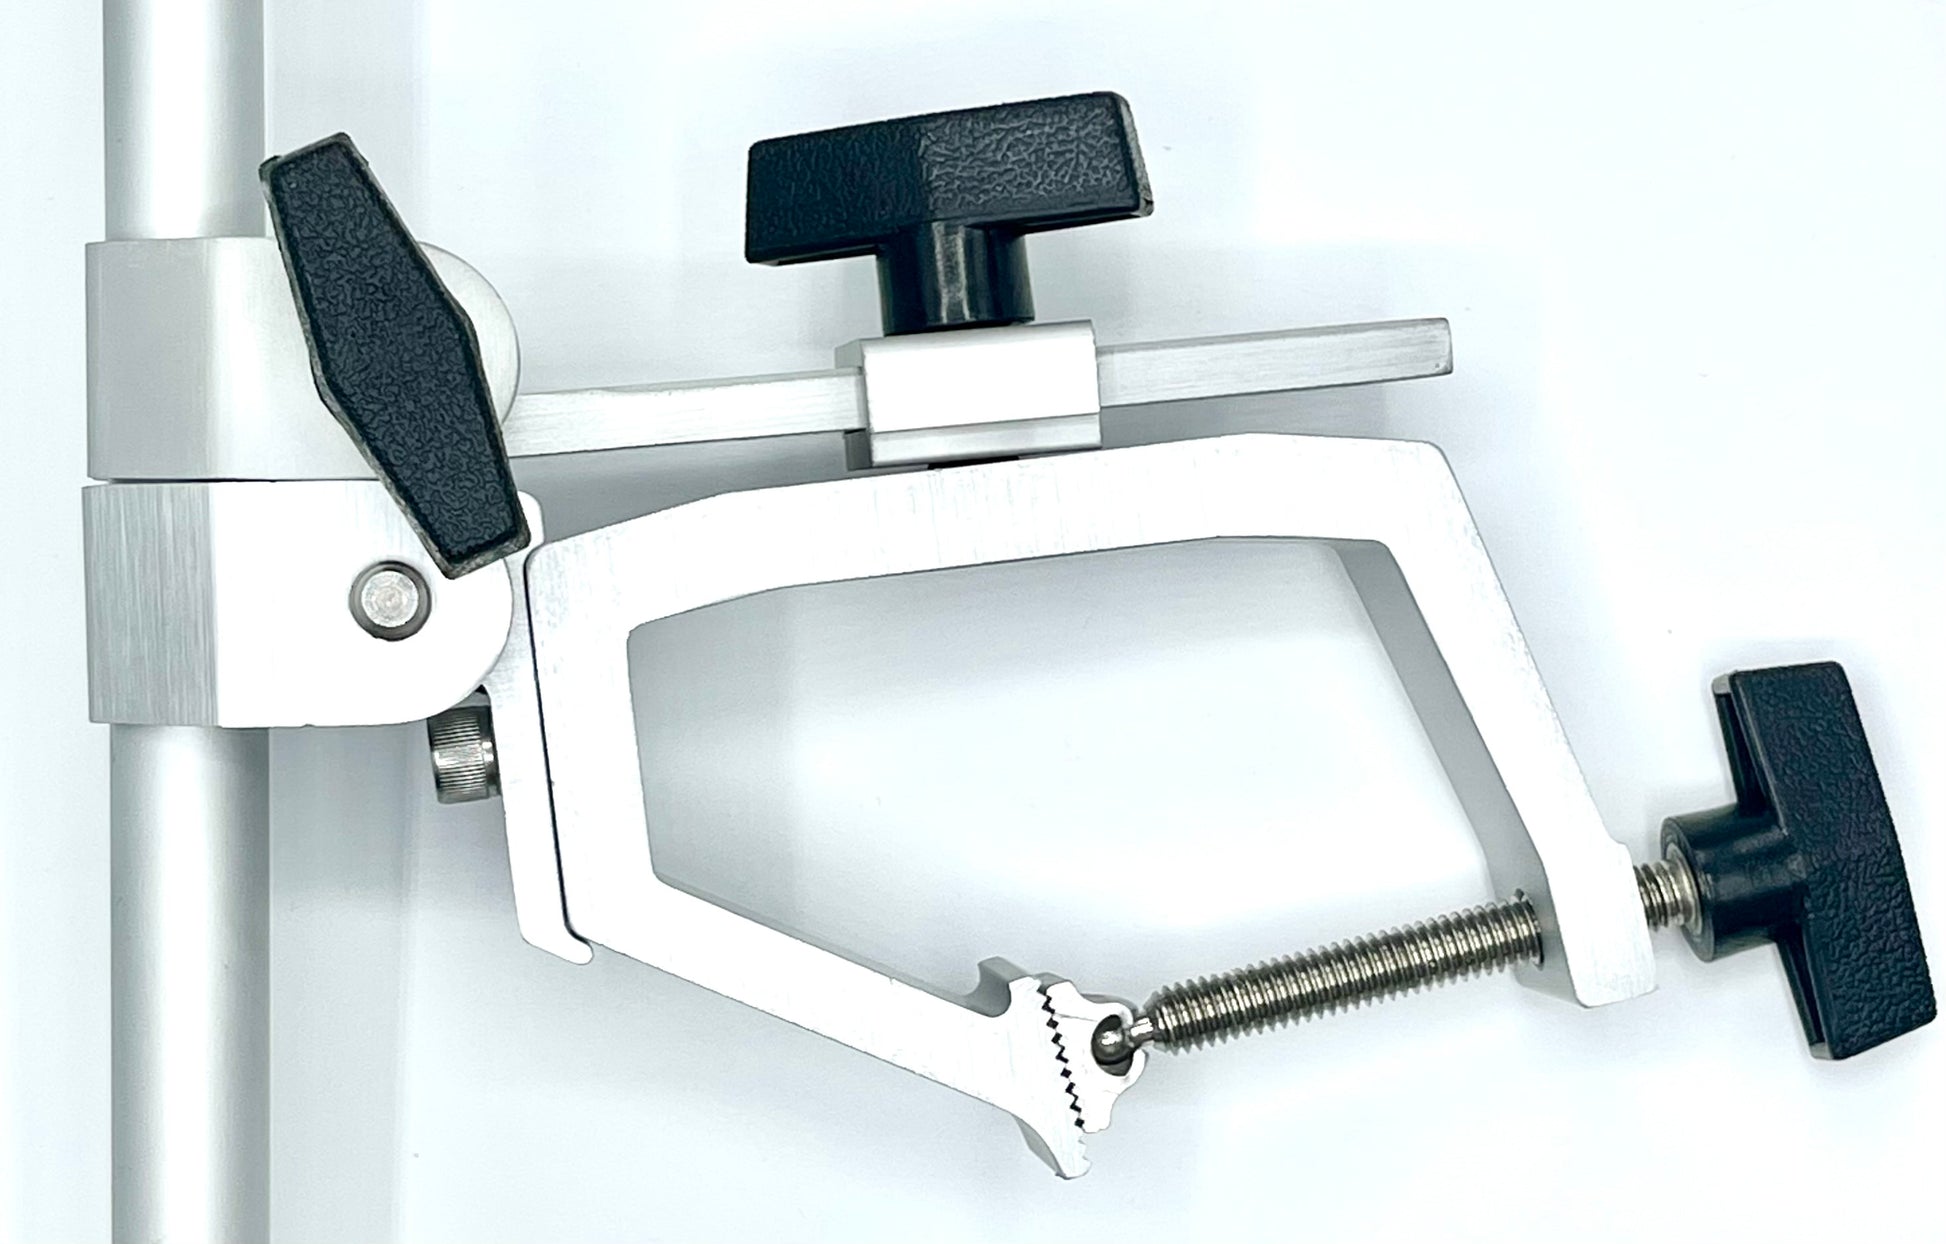 Medium clamp mount for rod holder - TITE-LOK